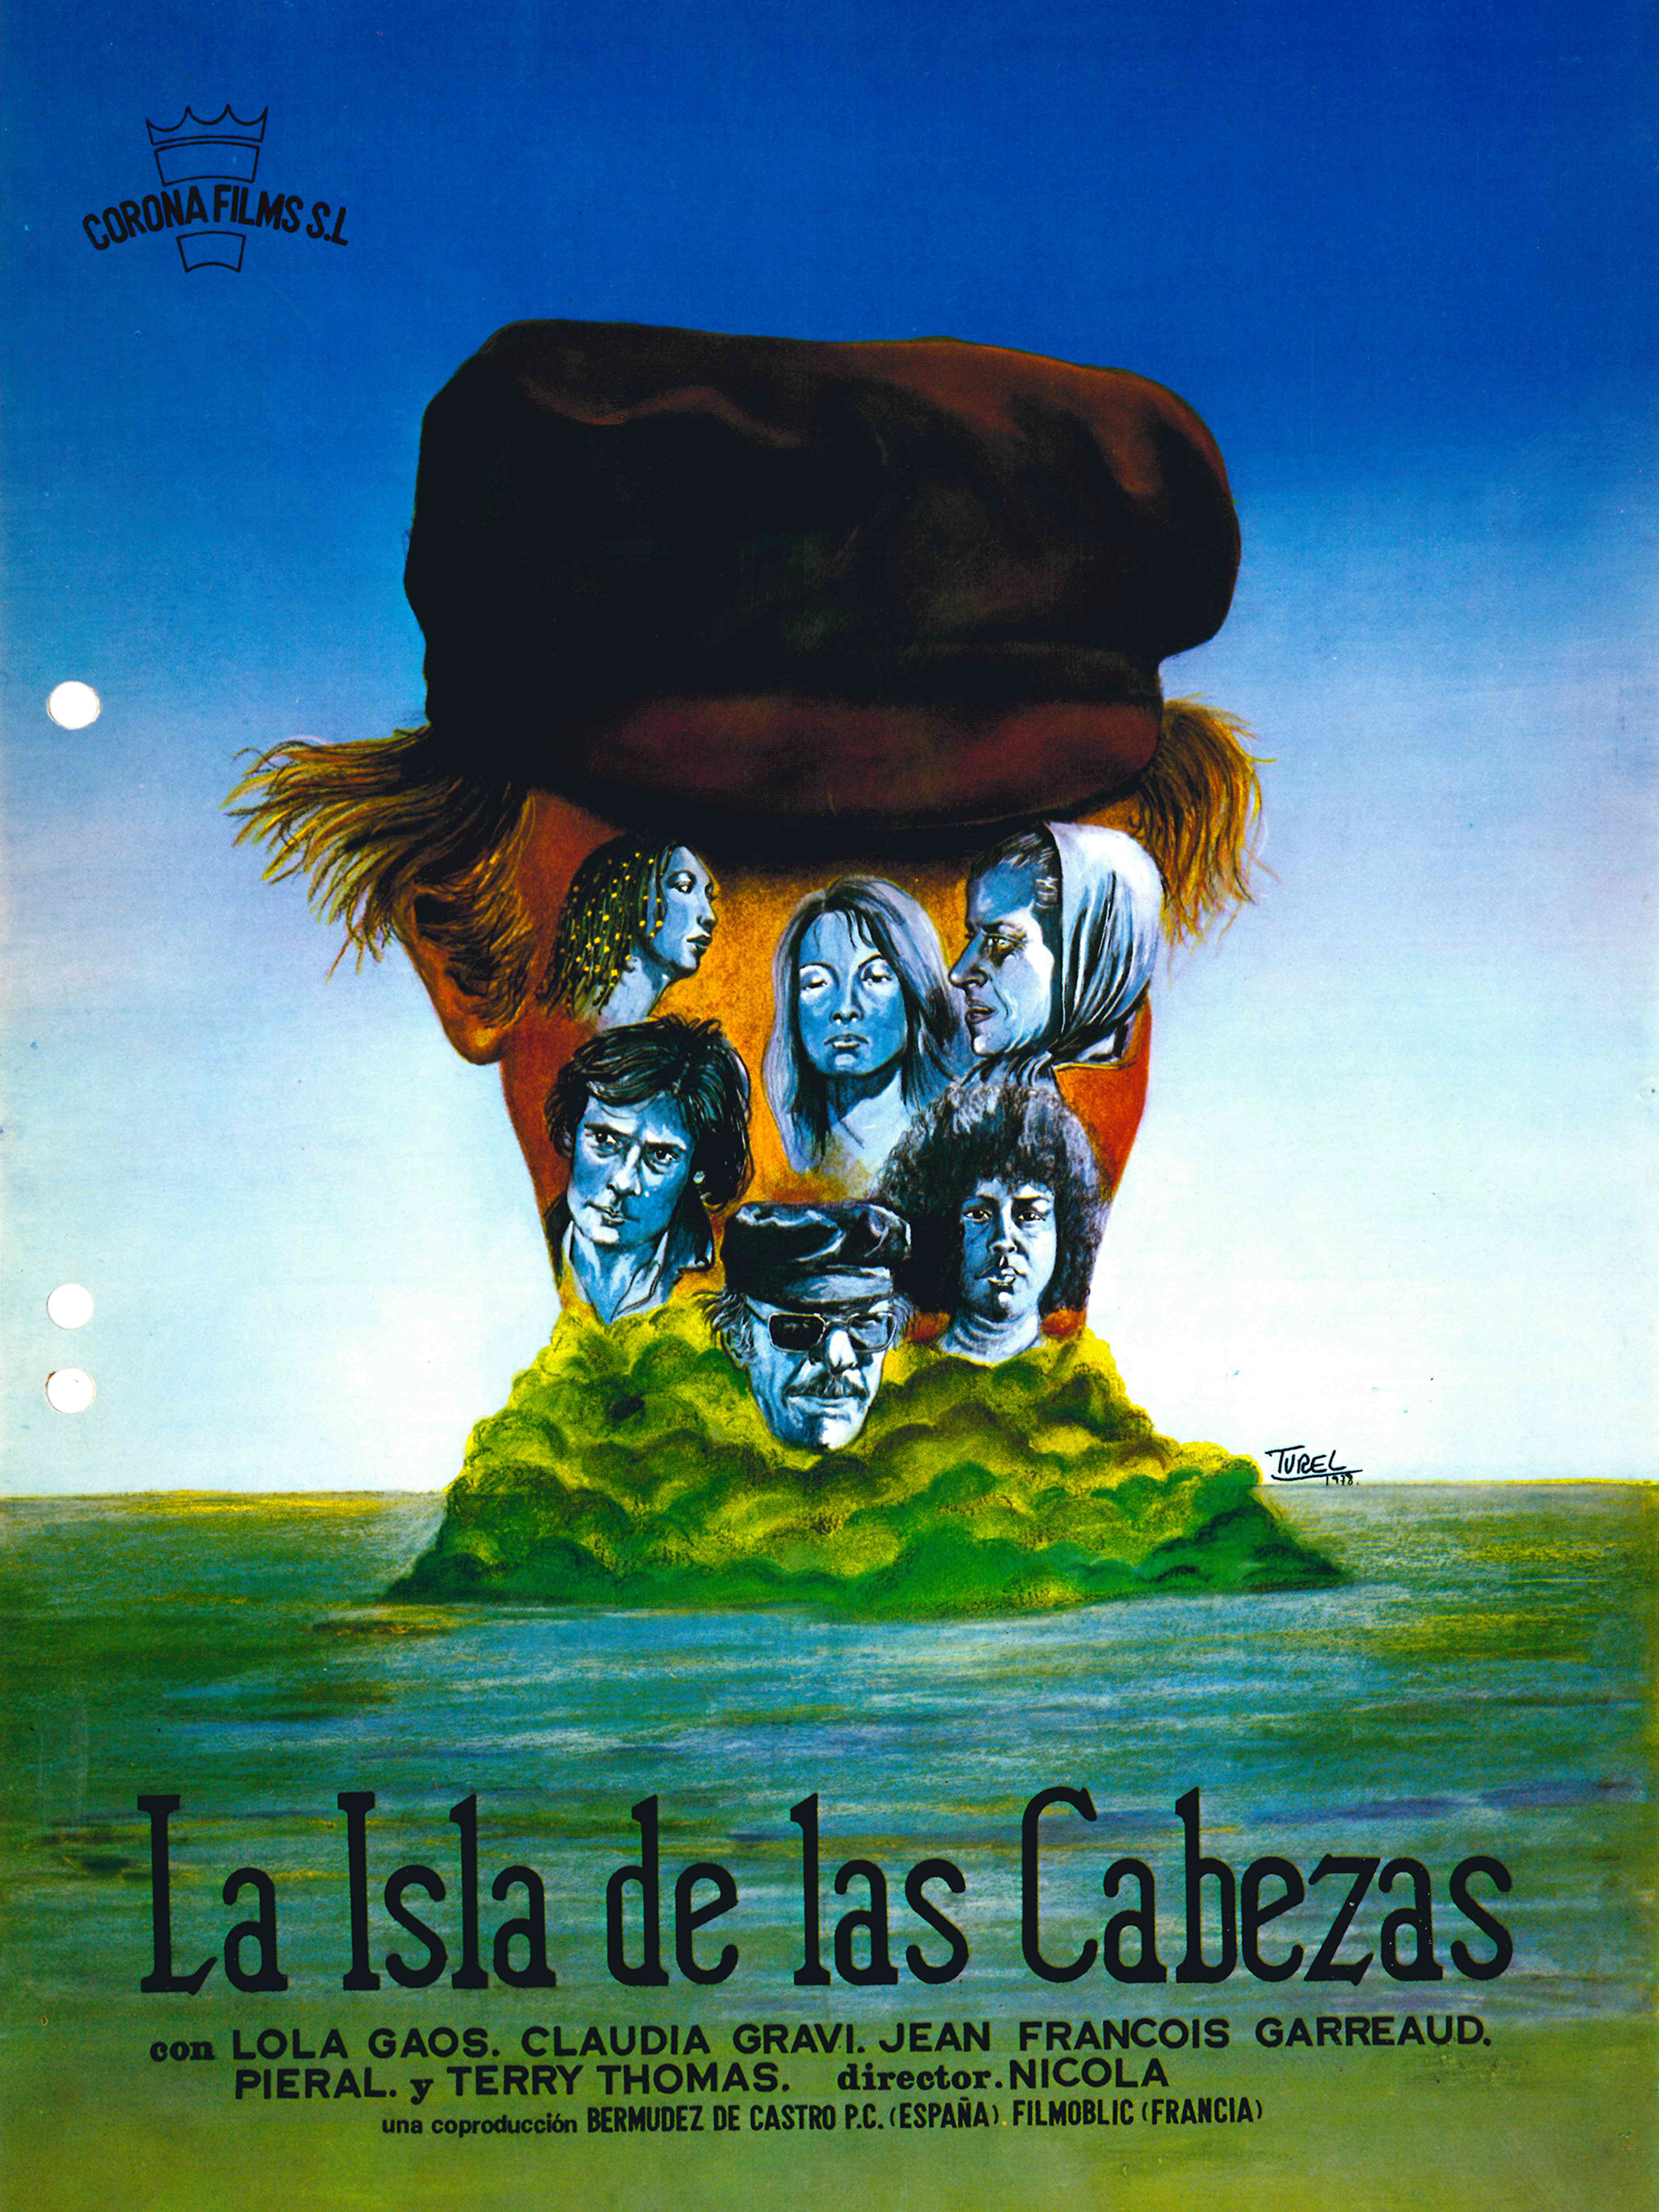 La isla de las cabezas (1979) Screenshot 1 